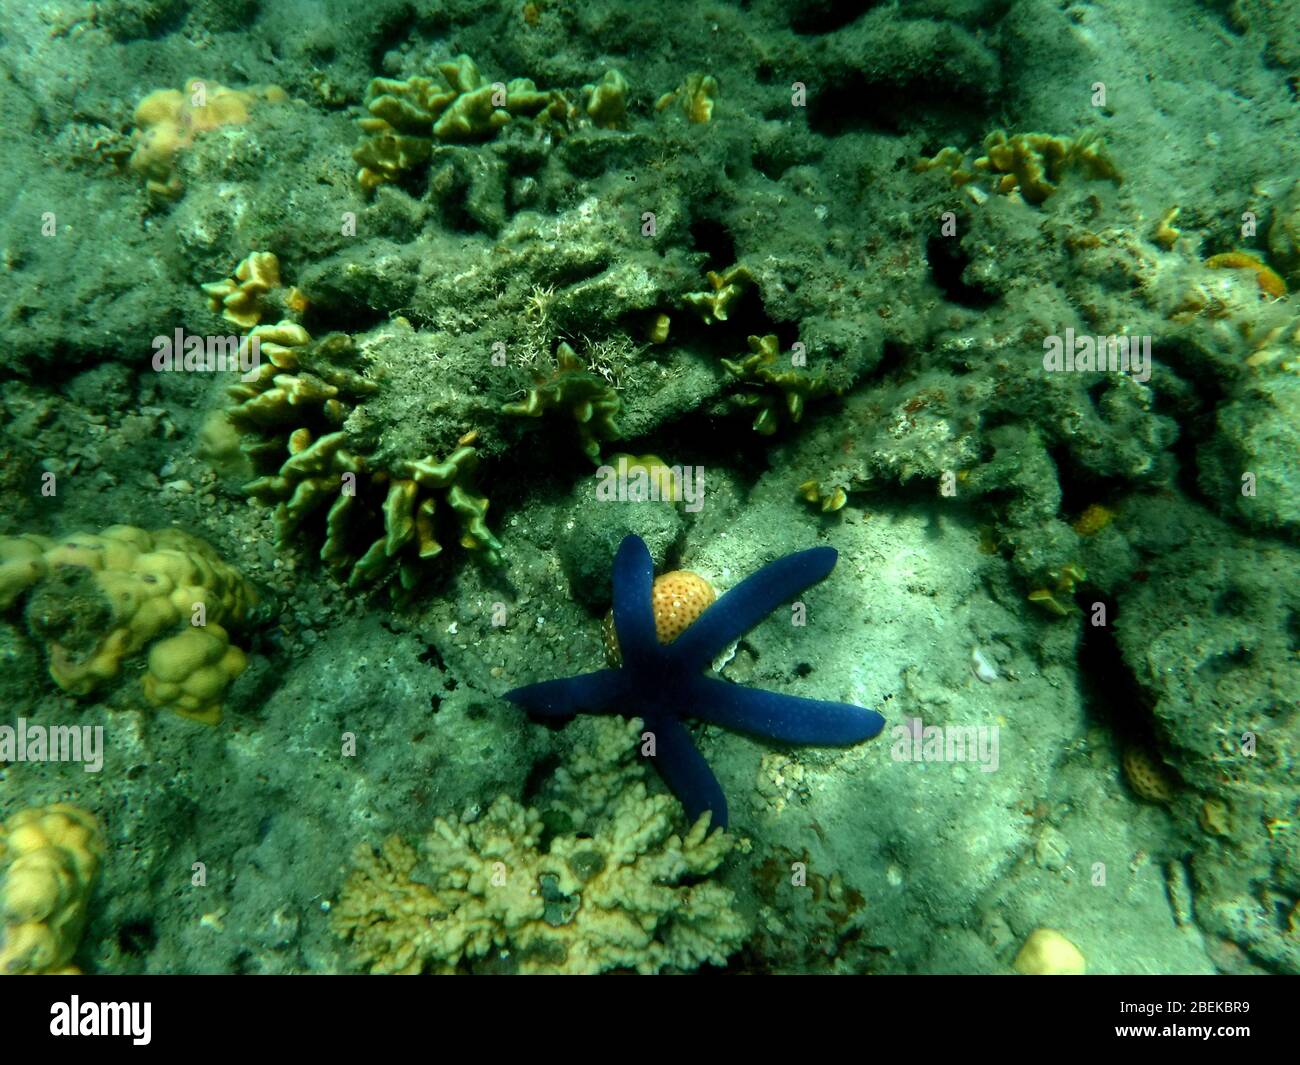 Unterwasser Korallenriff mit einer Vielzahl von schönen Exemplaren und großen blauen Seesternen in den warmen Gewässern des Südpazifiks gesehen. Stockfoto